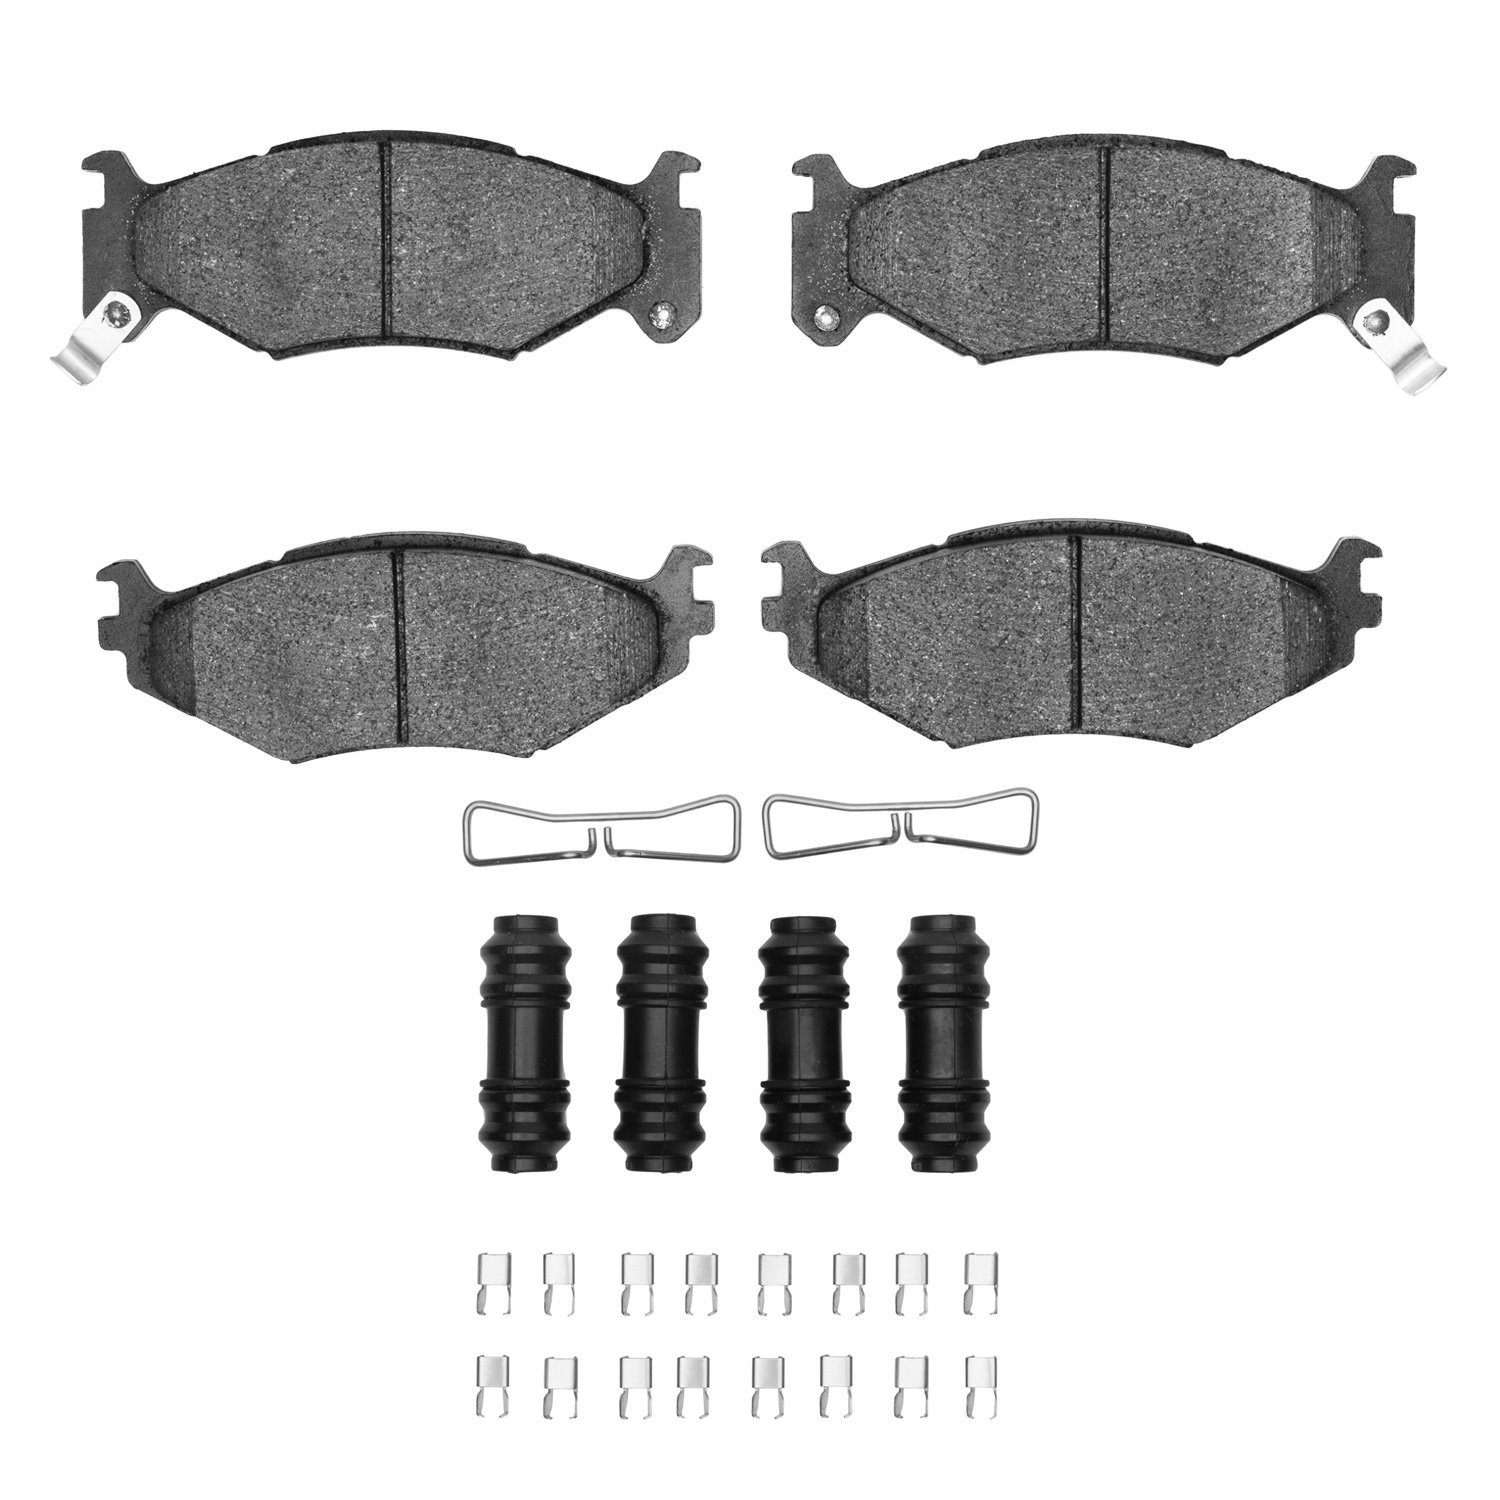 1311-0522-01 3000-Series Semi-Metallic Brake Pads & Hardware Kit, 1991-1995 Mopar, Position: Front